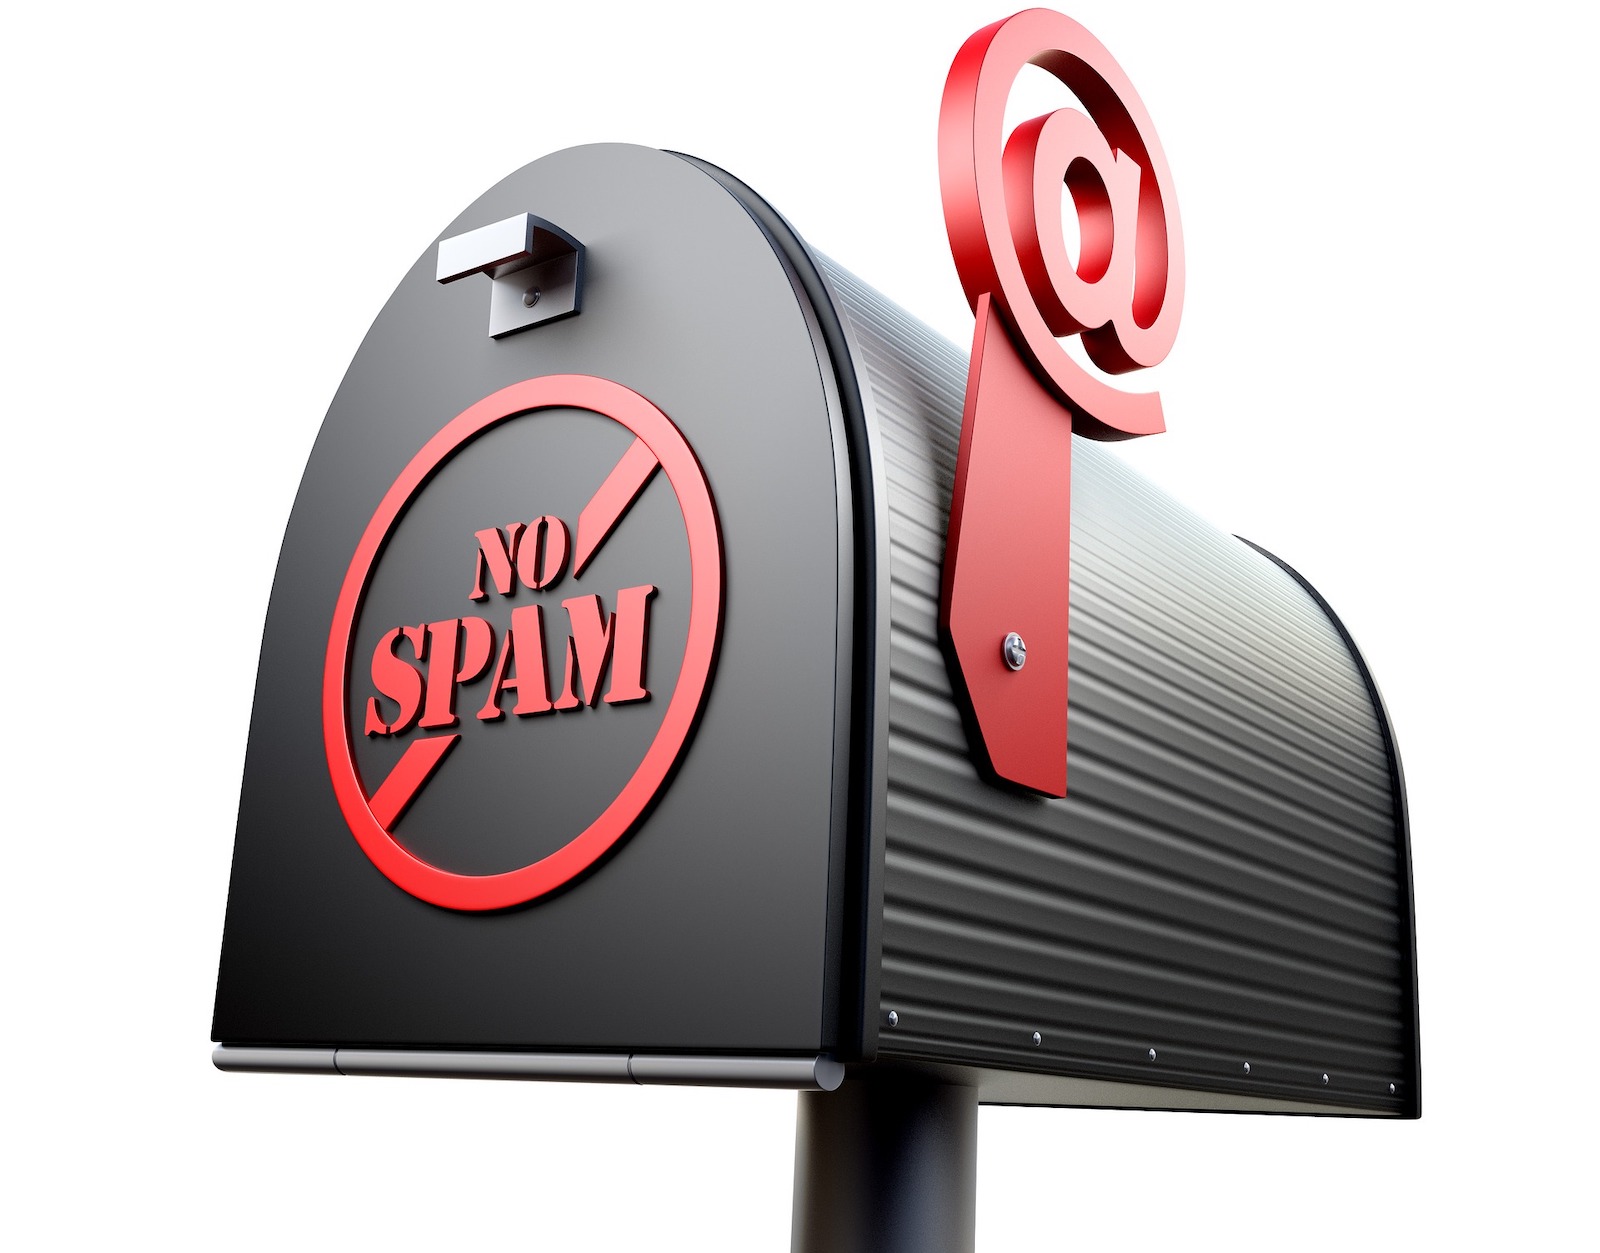 Le spam n'est pas que de la publicité dans votre boîte aux lettres. C'est aussi et surtout des arnaques et des virus qu'il faut absolument éradiquer. © AbsolutVision, Pixabay